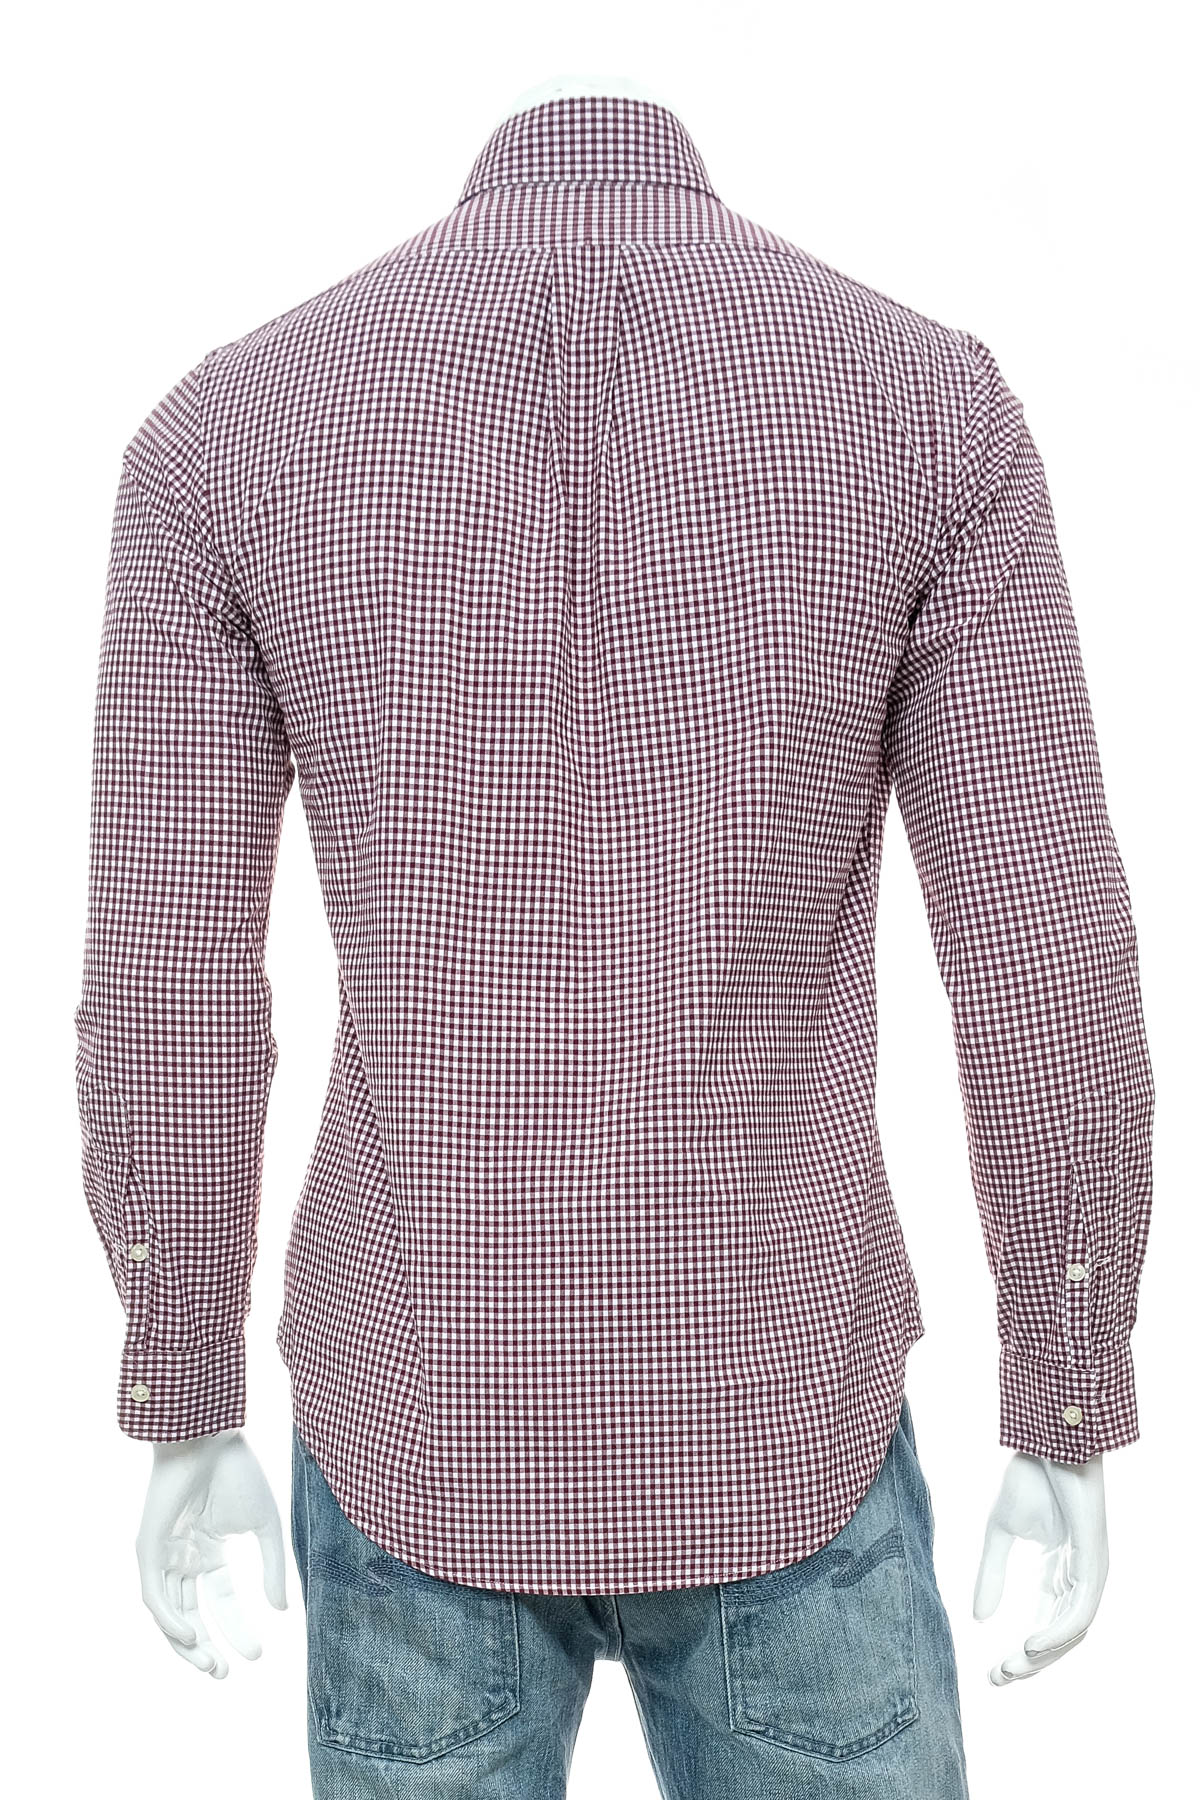 Ανδρικό πουκάμισο - Ralph Lauren - 1